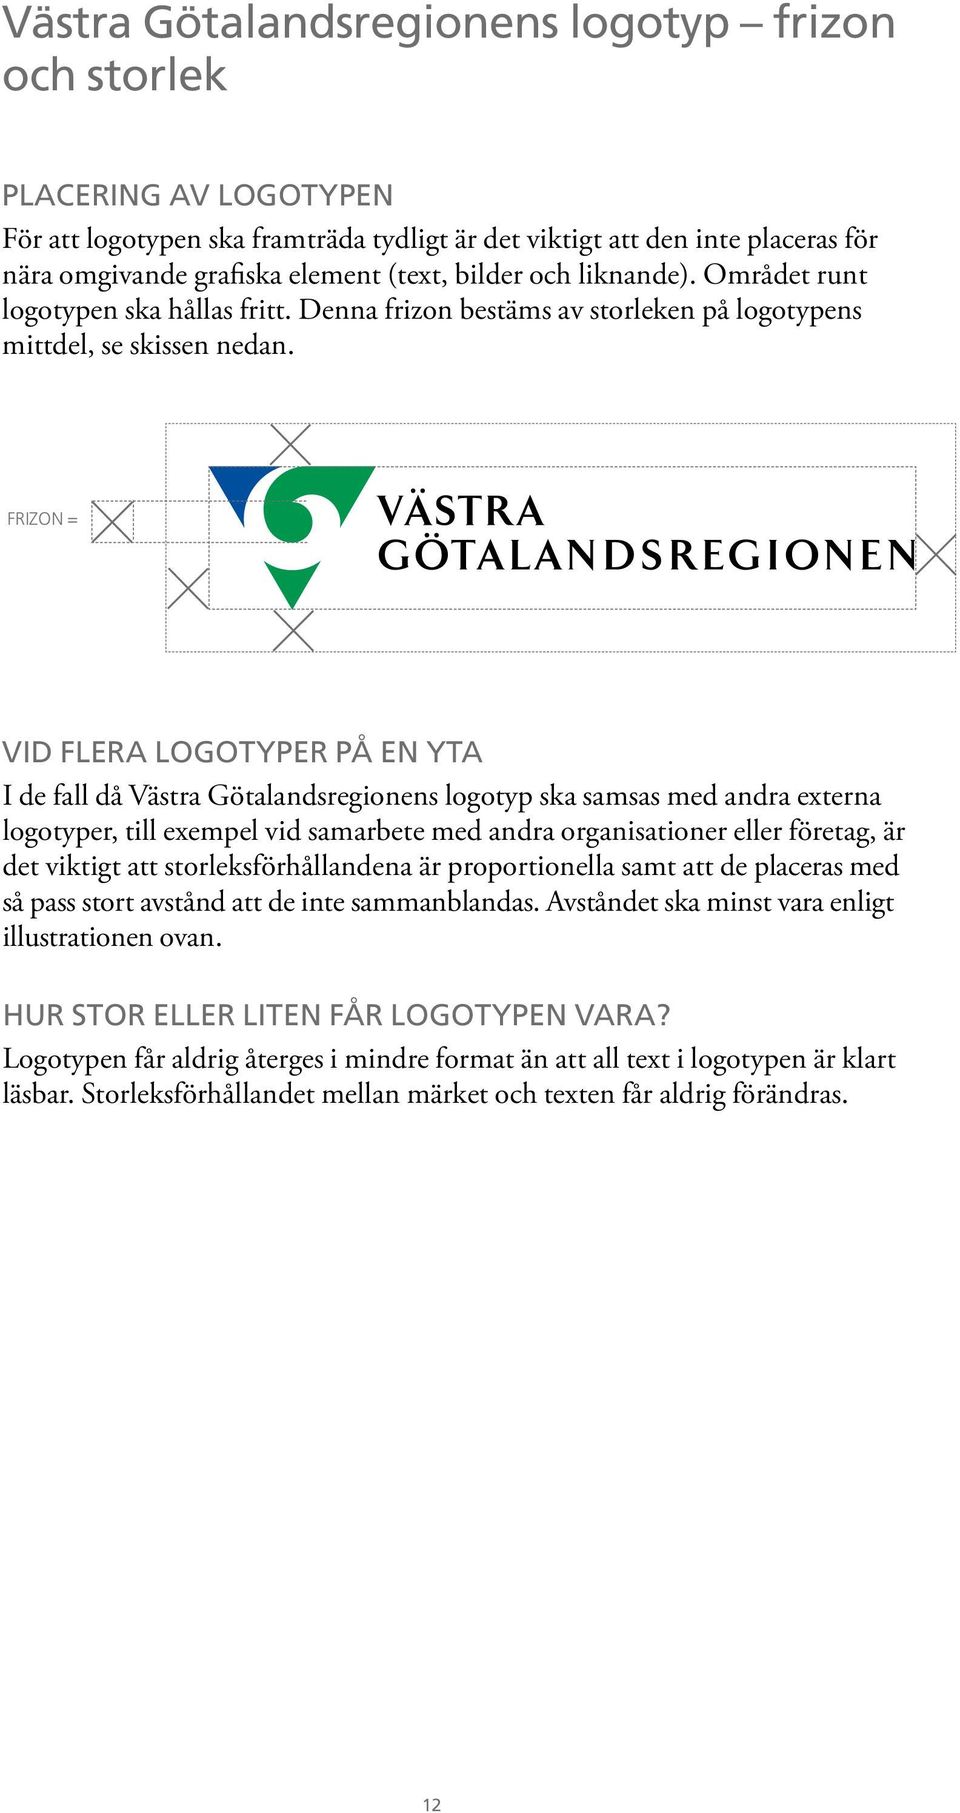 frizon = Vid flera logotyper på en yta I de fall då Västra Götalandsregionens logotyp ska samsas med andra externa logotyper, till exempel vid samarbete med andra organisationer eller företag, är det